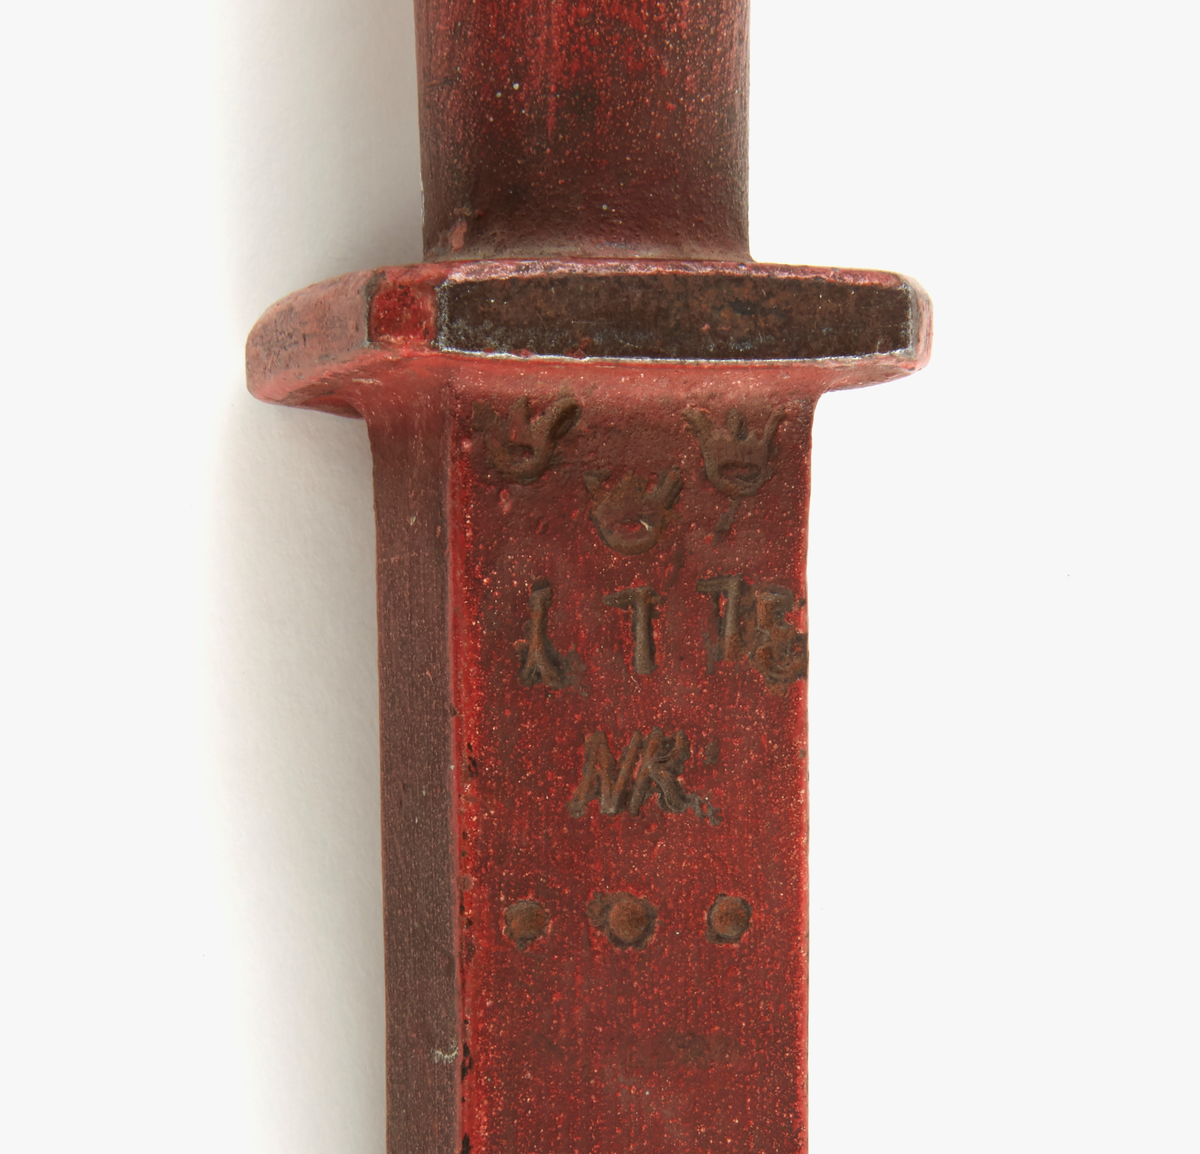 Alnmått av järn, rödmålat. Handtag med ledad ring i ena änden. Krönt med: "tre kronor, 1775, NR".